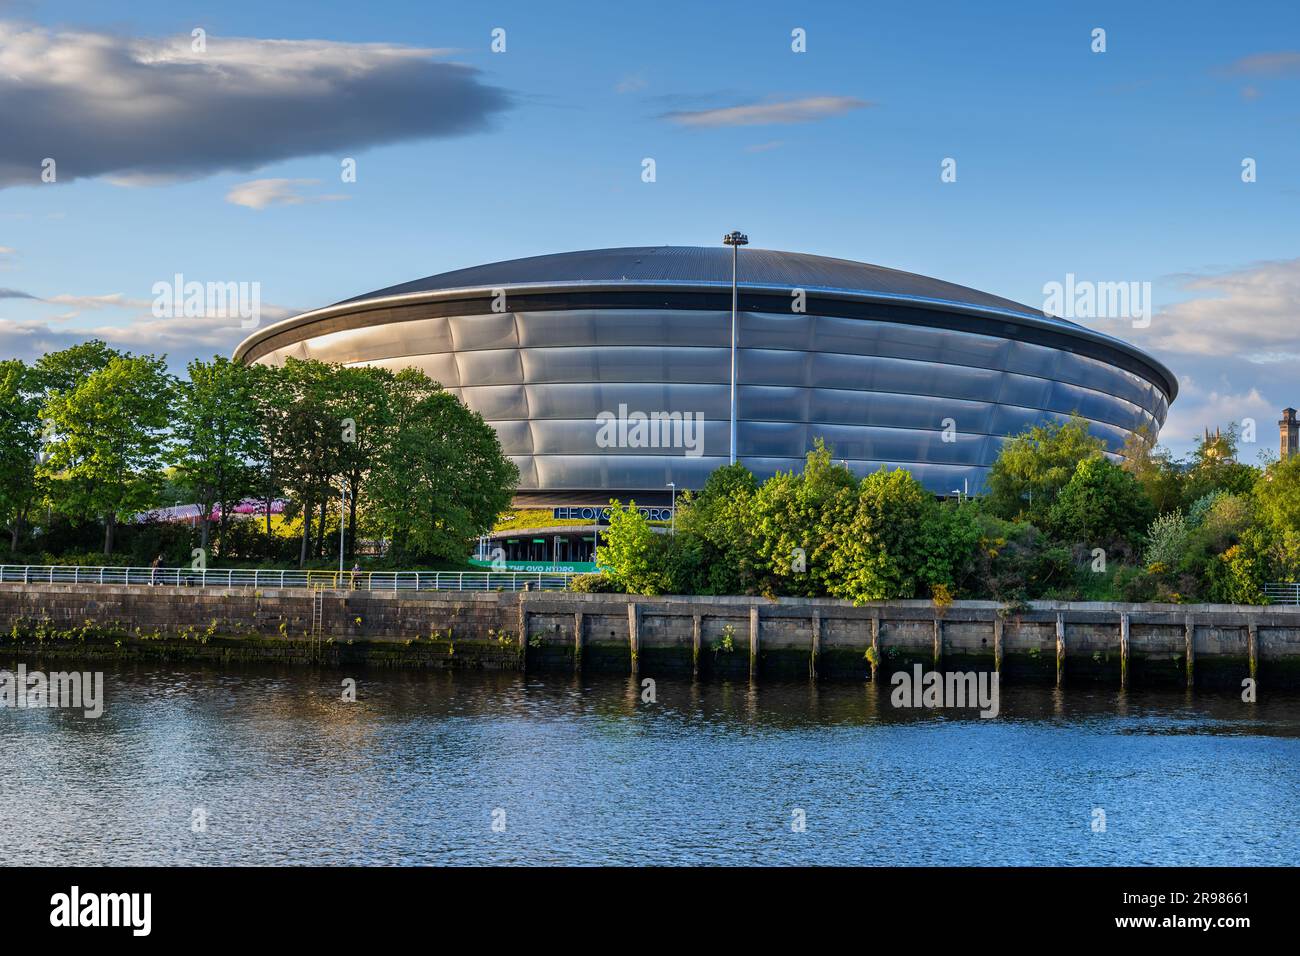 Le stade intérieur OVO Hydro à River Clyde, situé dans le campus écossais de la ville de Glasgow, en Écosse. Banque D'Images